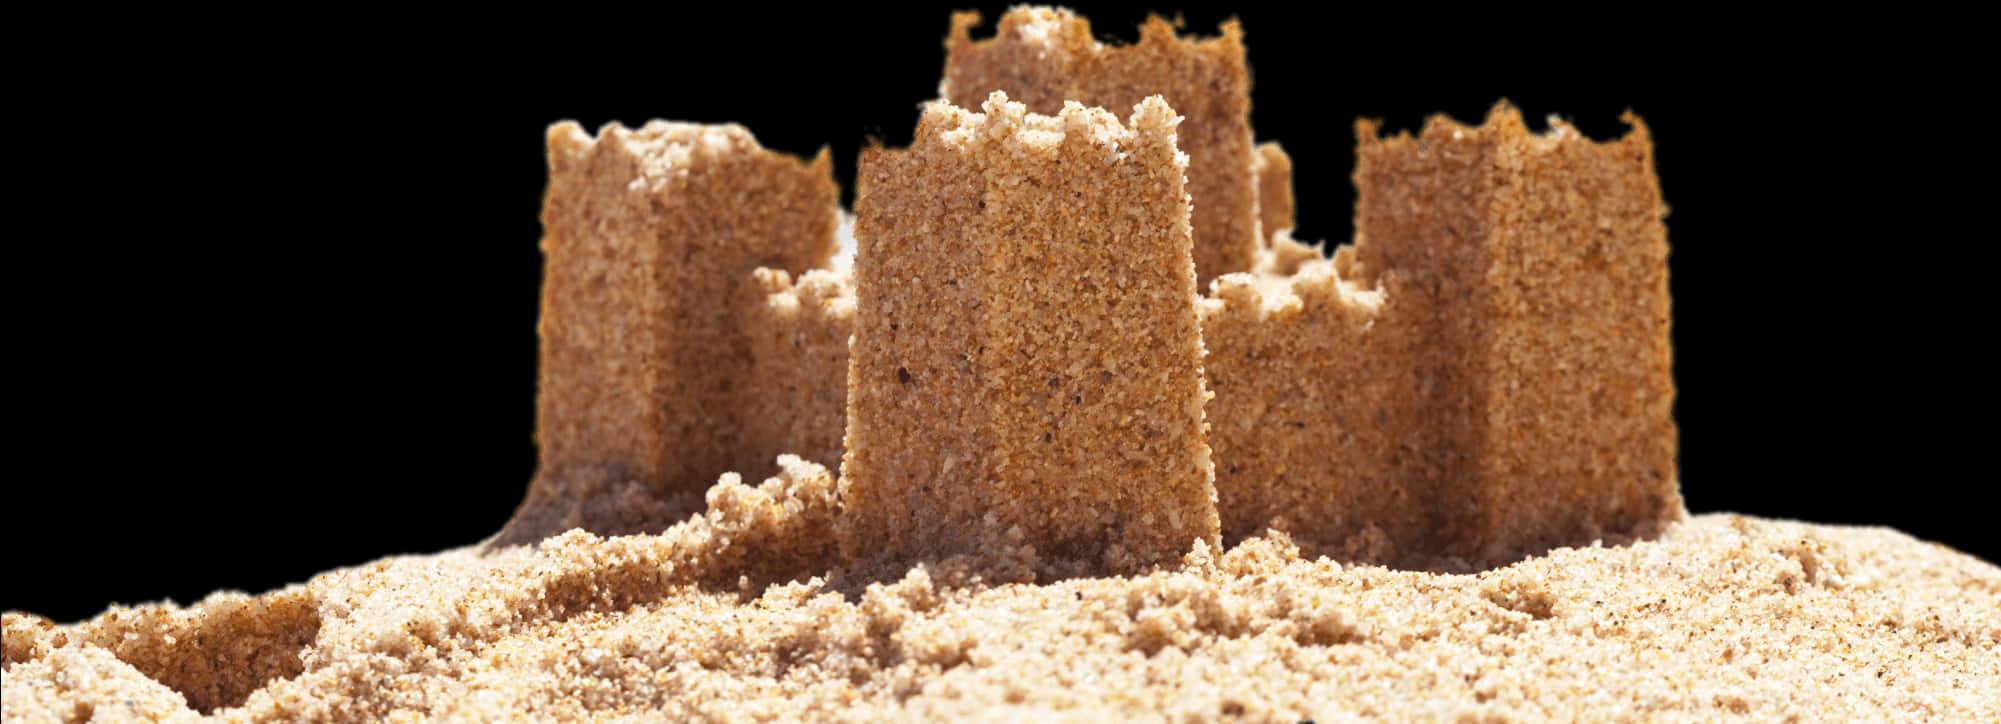 Sand Castle Black Background PNG